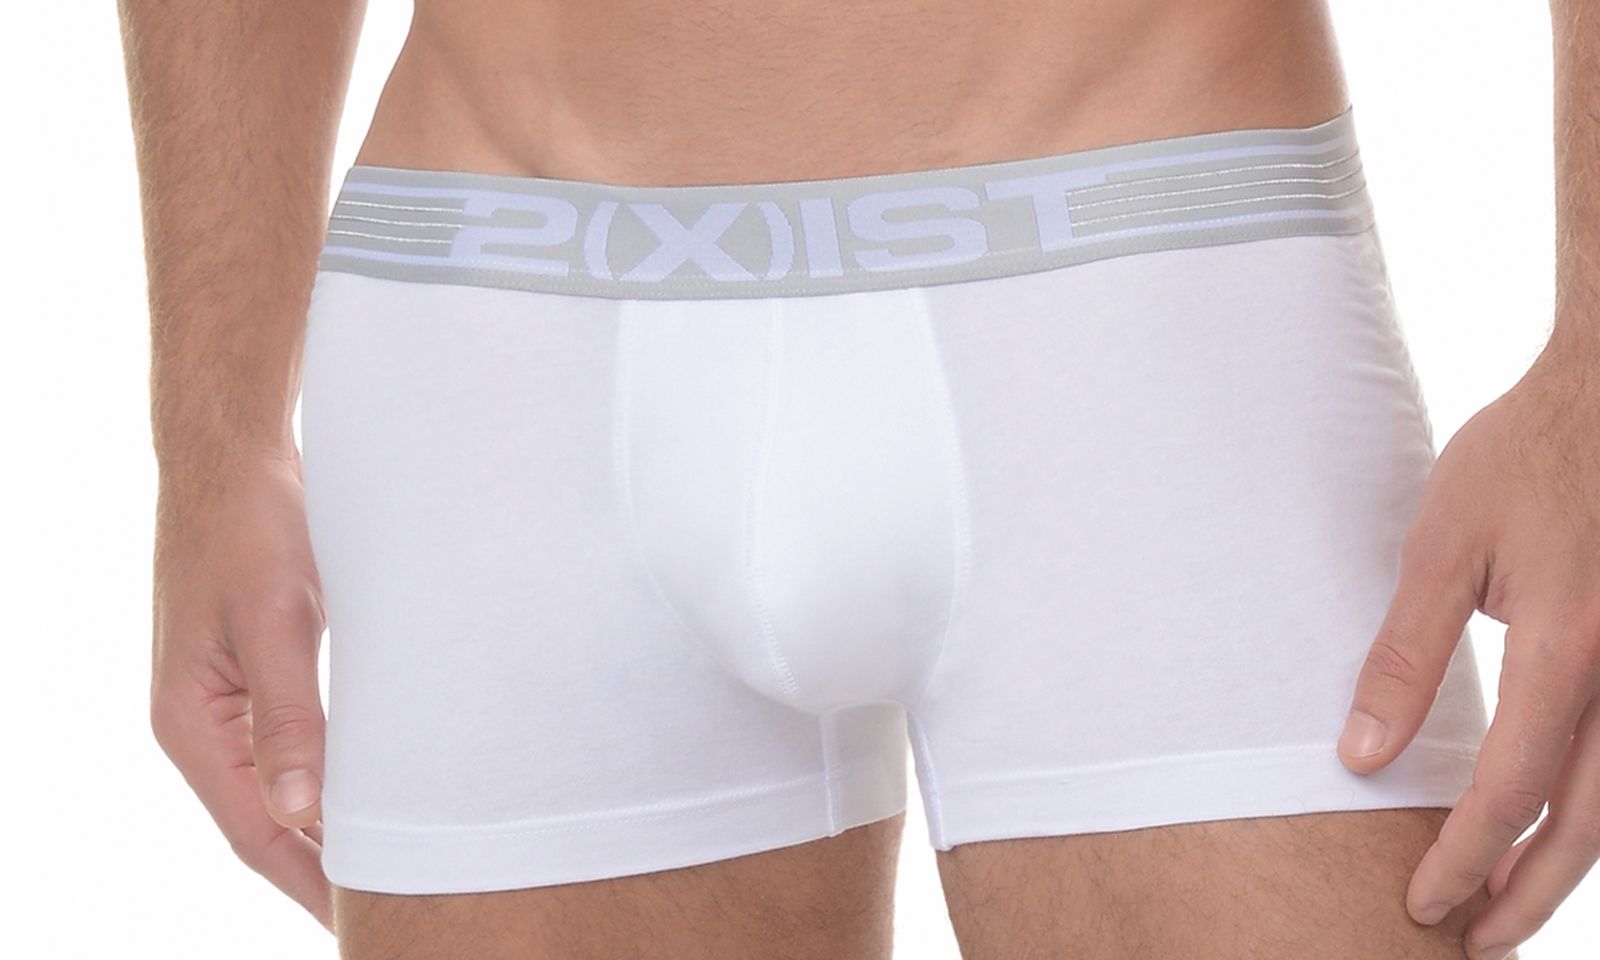 2(X)IST Underwear Line Now Available at Eldorado